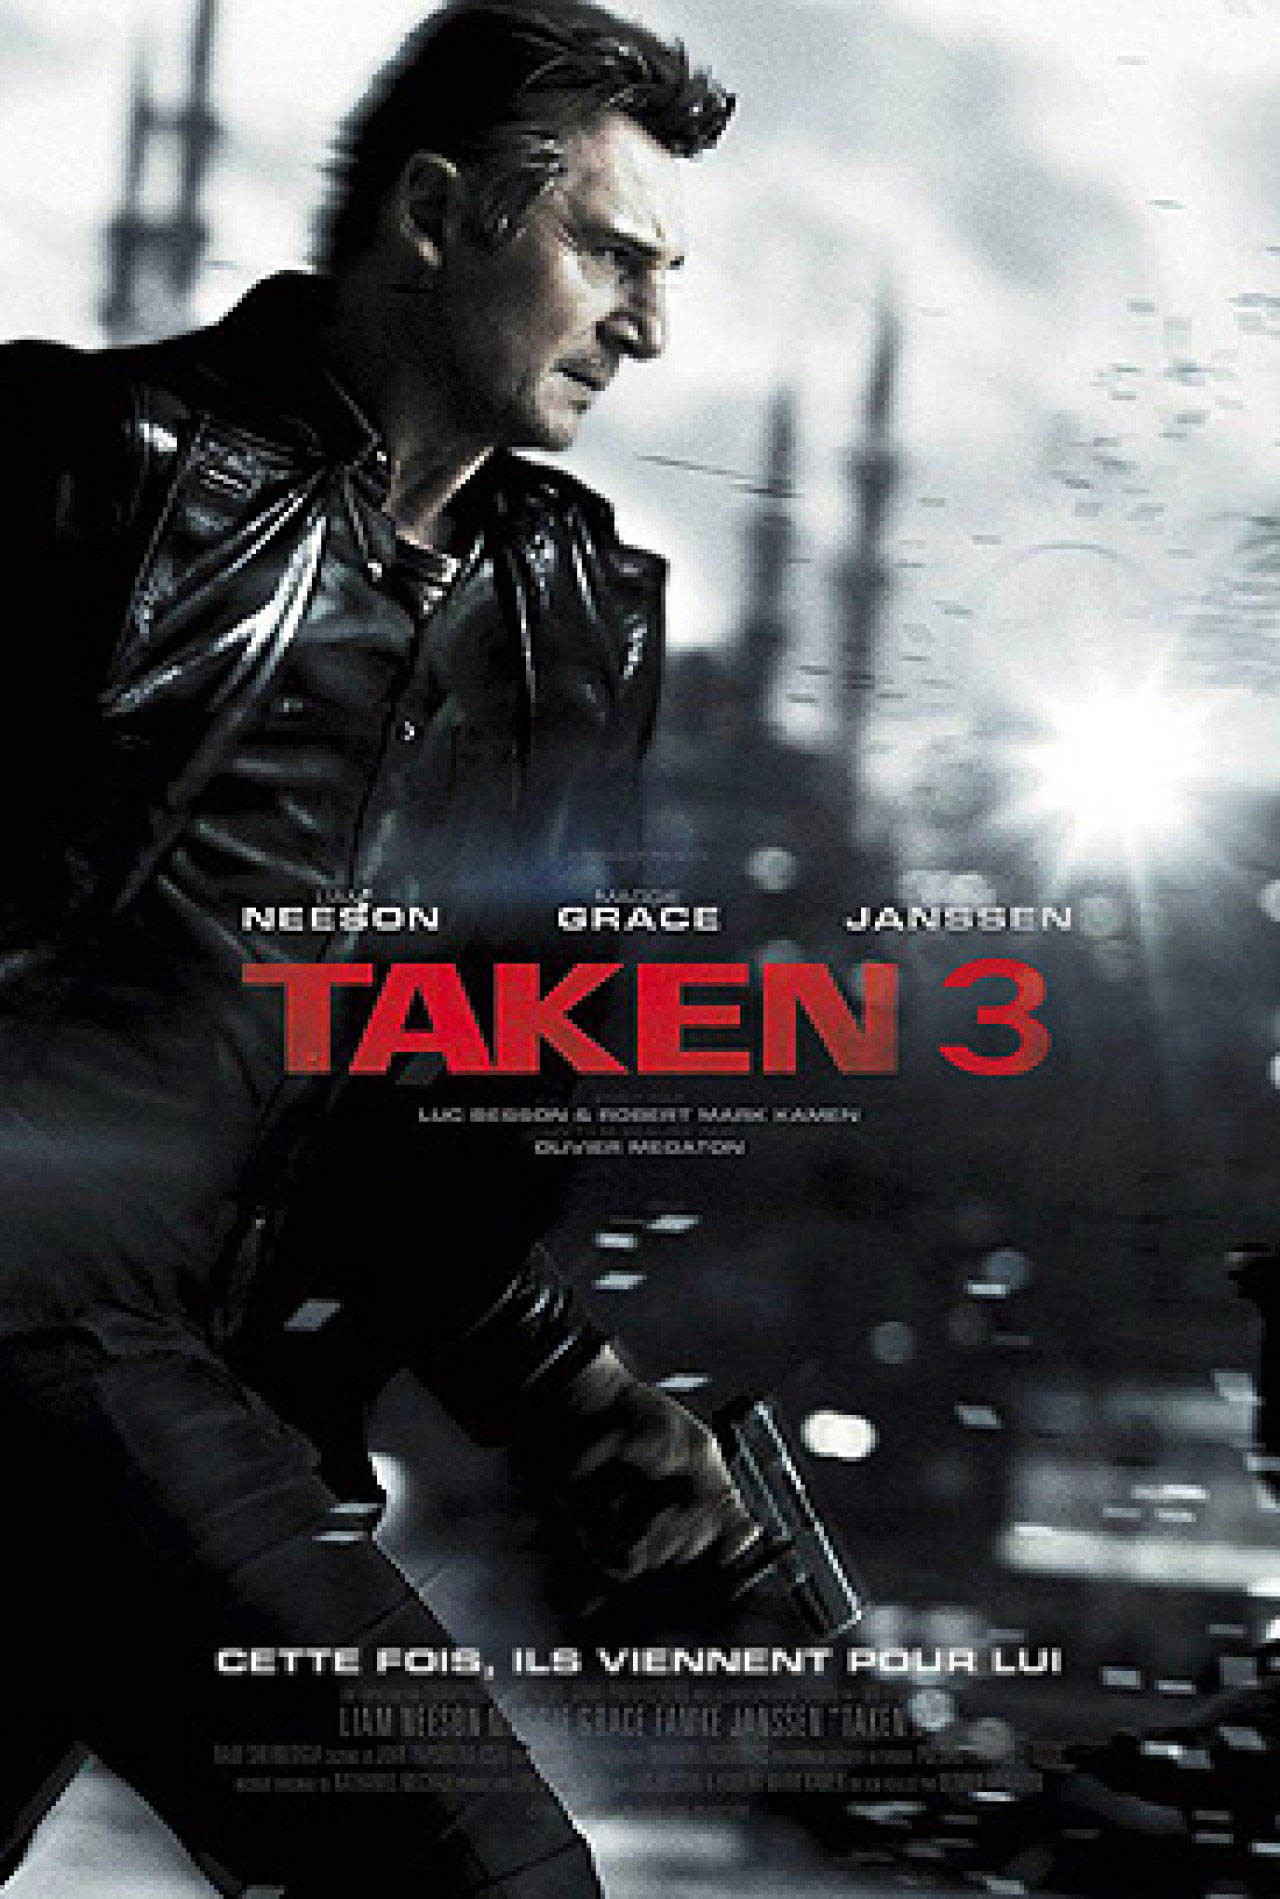 دانلود فیلم Taken 3 با کیفیت EXTENDED BluRay 1080p